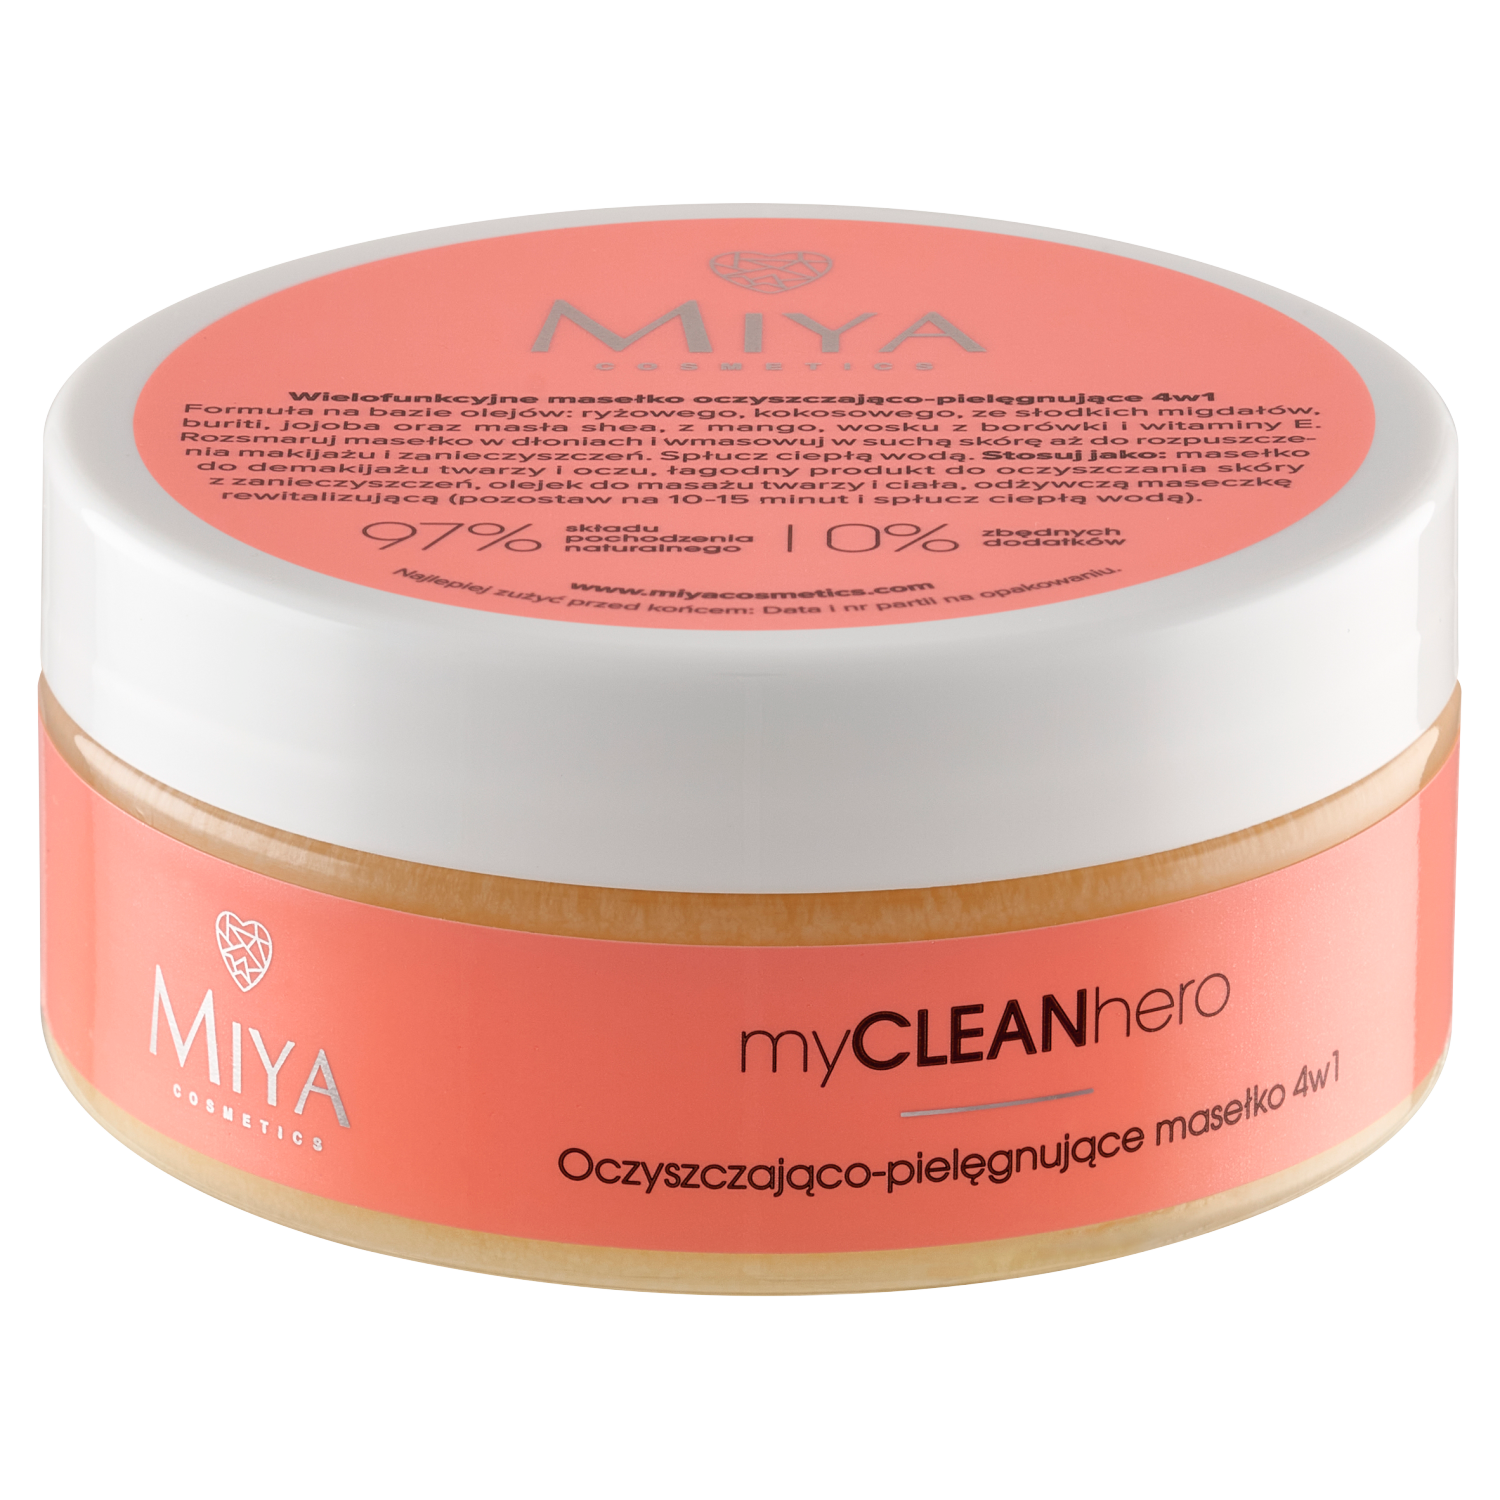 цена Очищающее и ухаживающее масло для снятия макияжа с лица Miya Cosmetics Mycleanhero, 70 гр